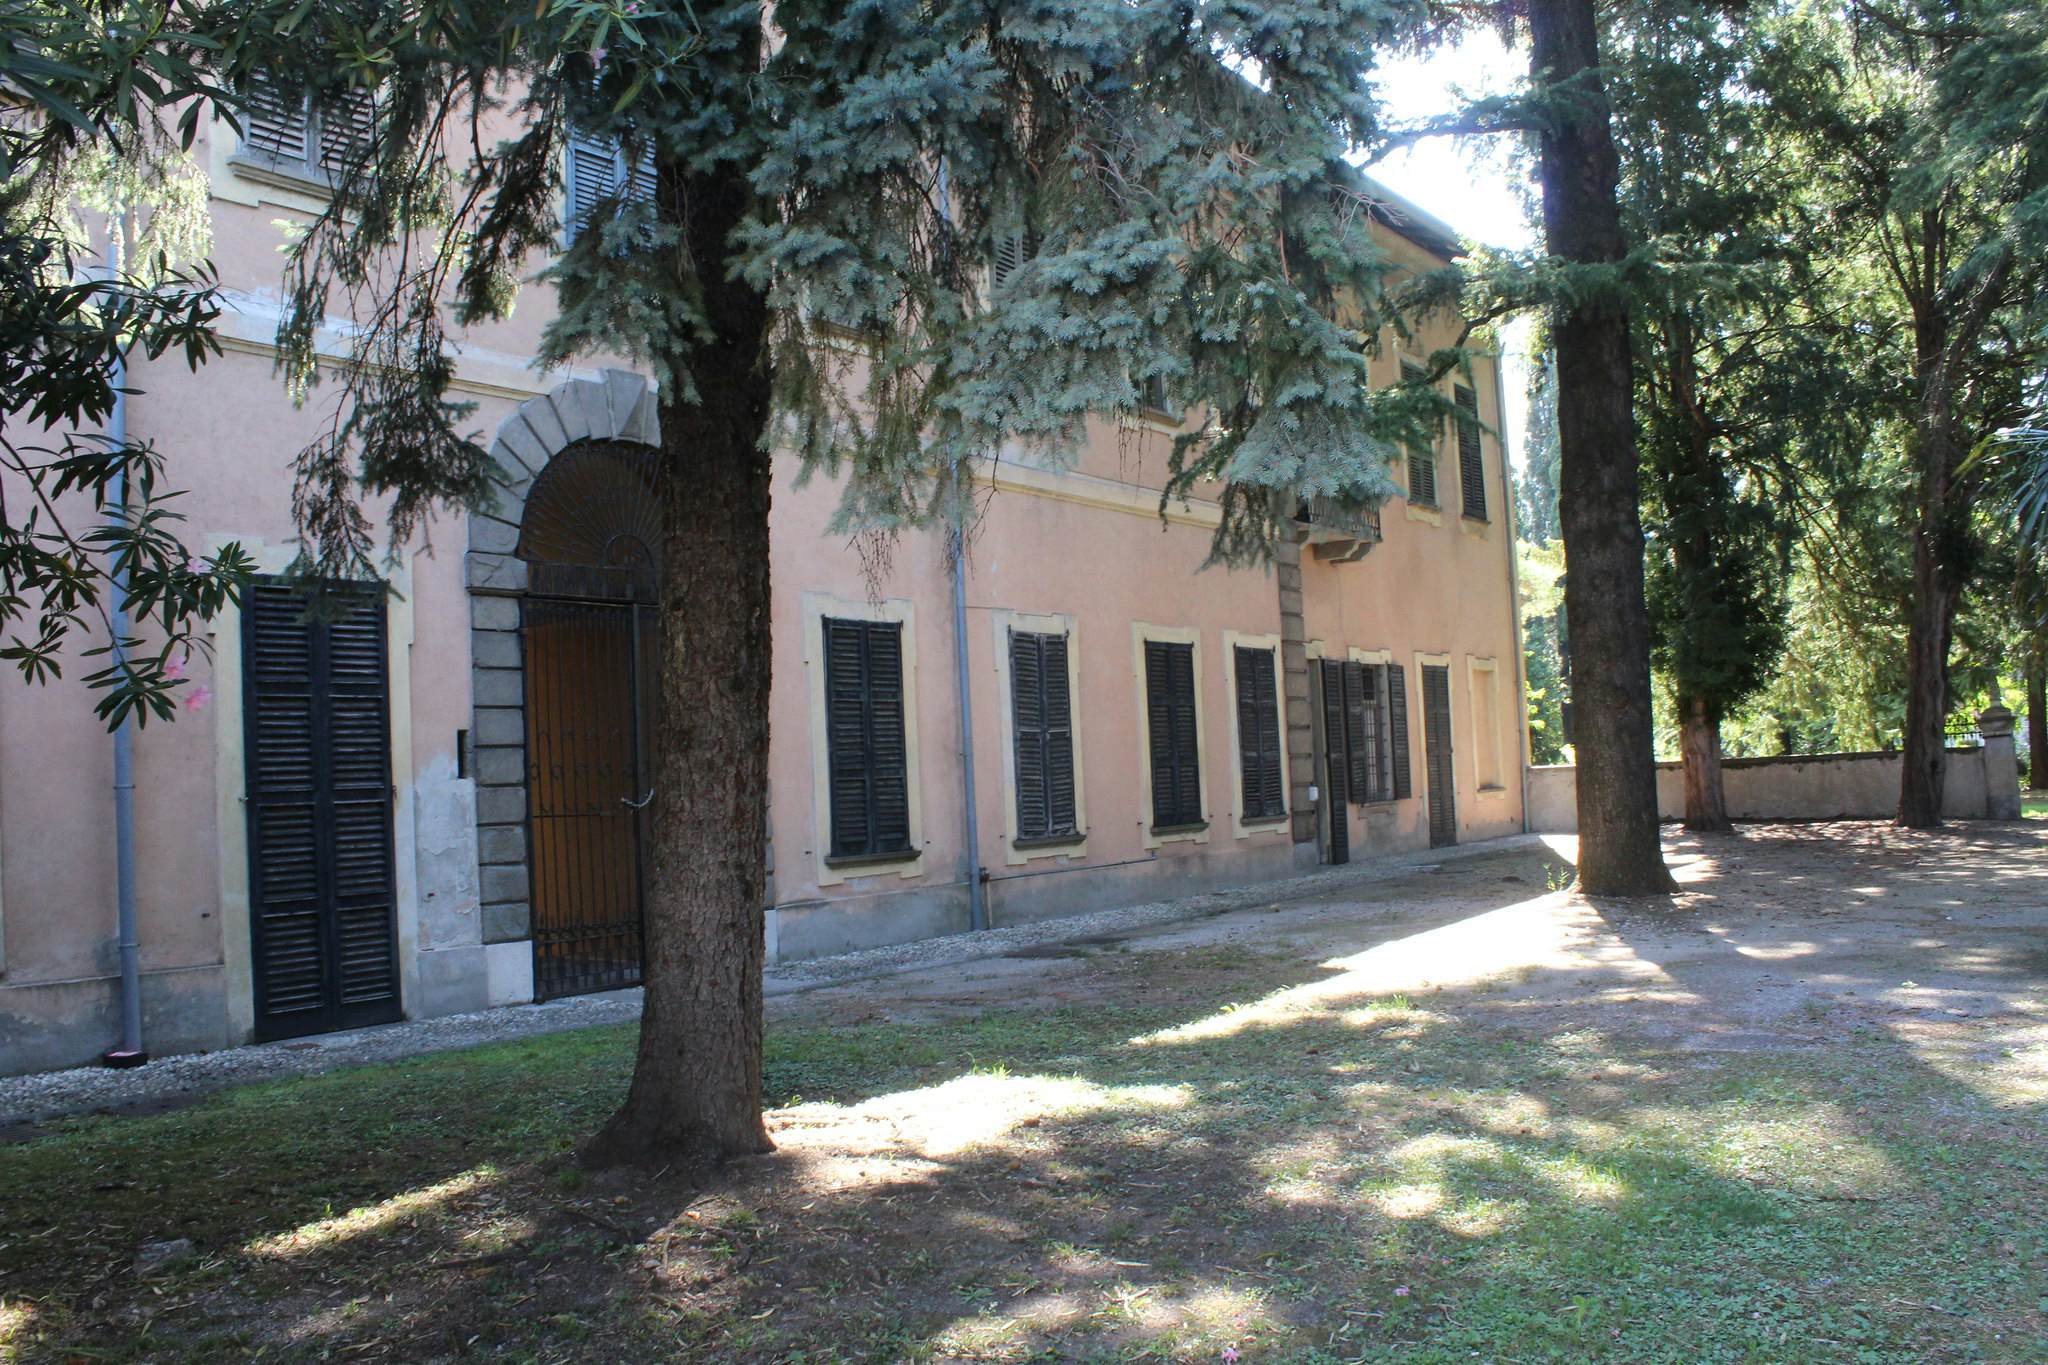 Casa Manzoni